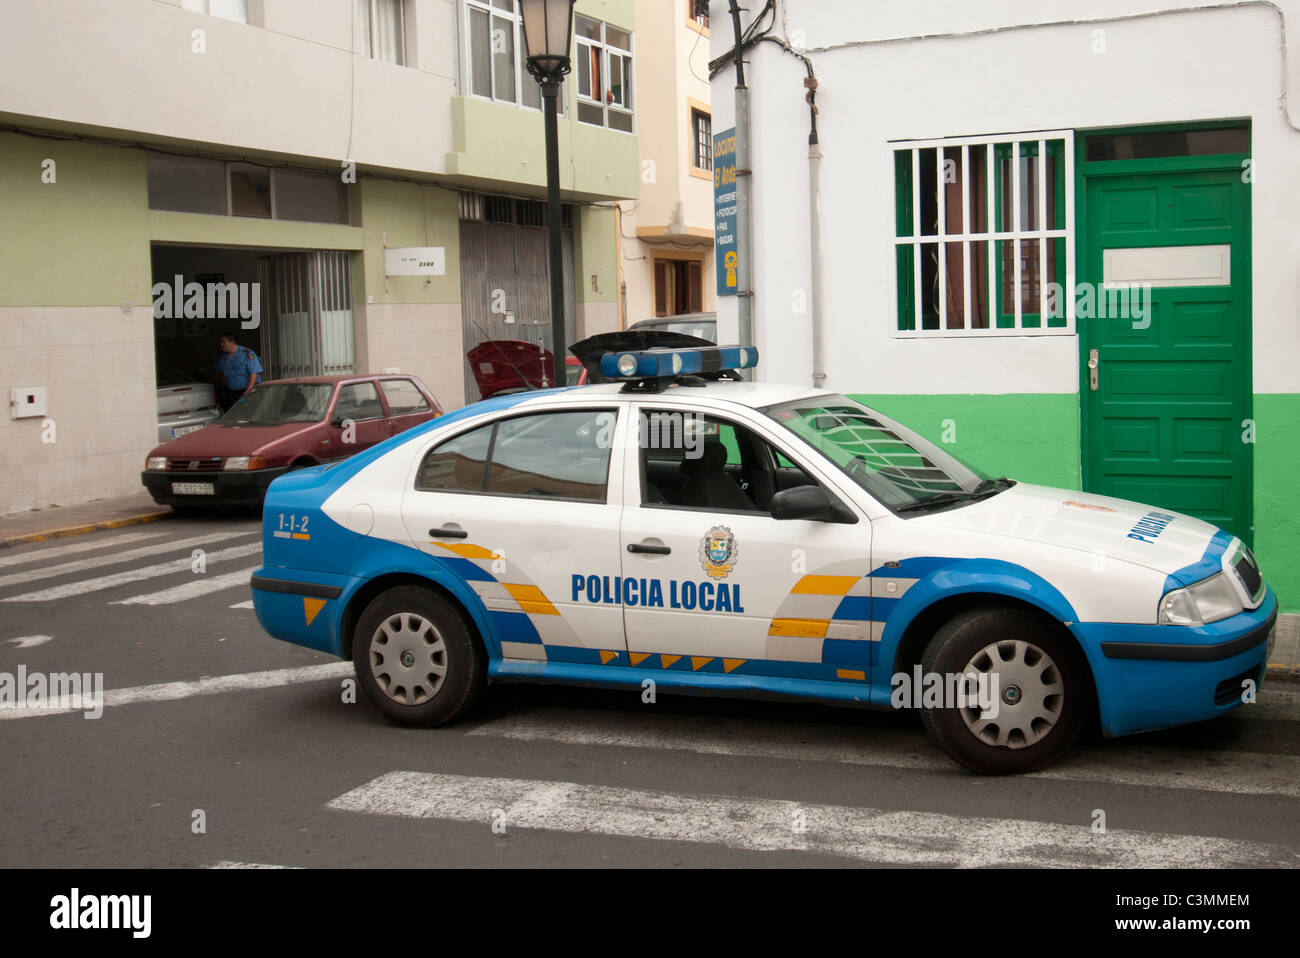 Policia local ( ) de coche de policía en Corralejo, Fuerteventura, Islas Canarias Foto de stock